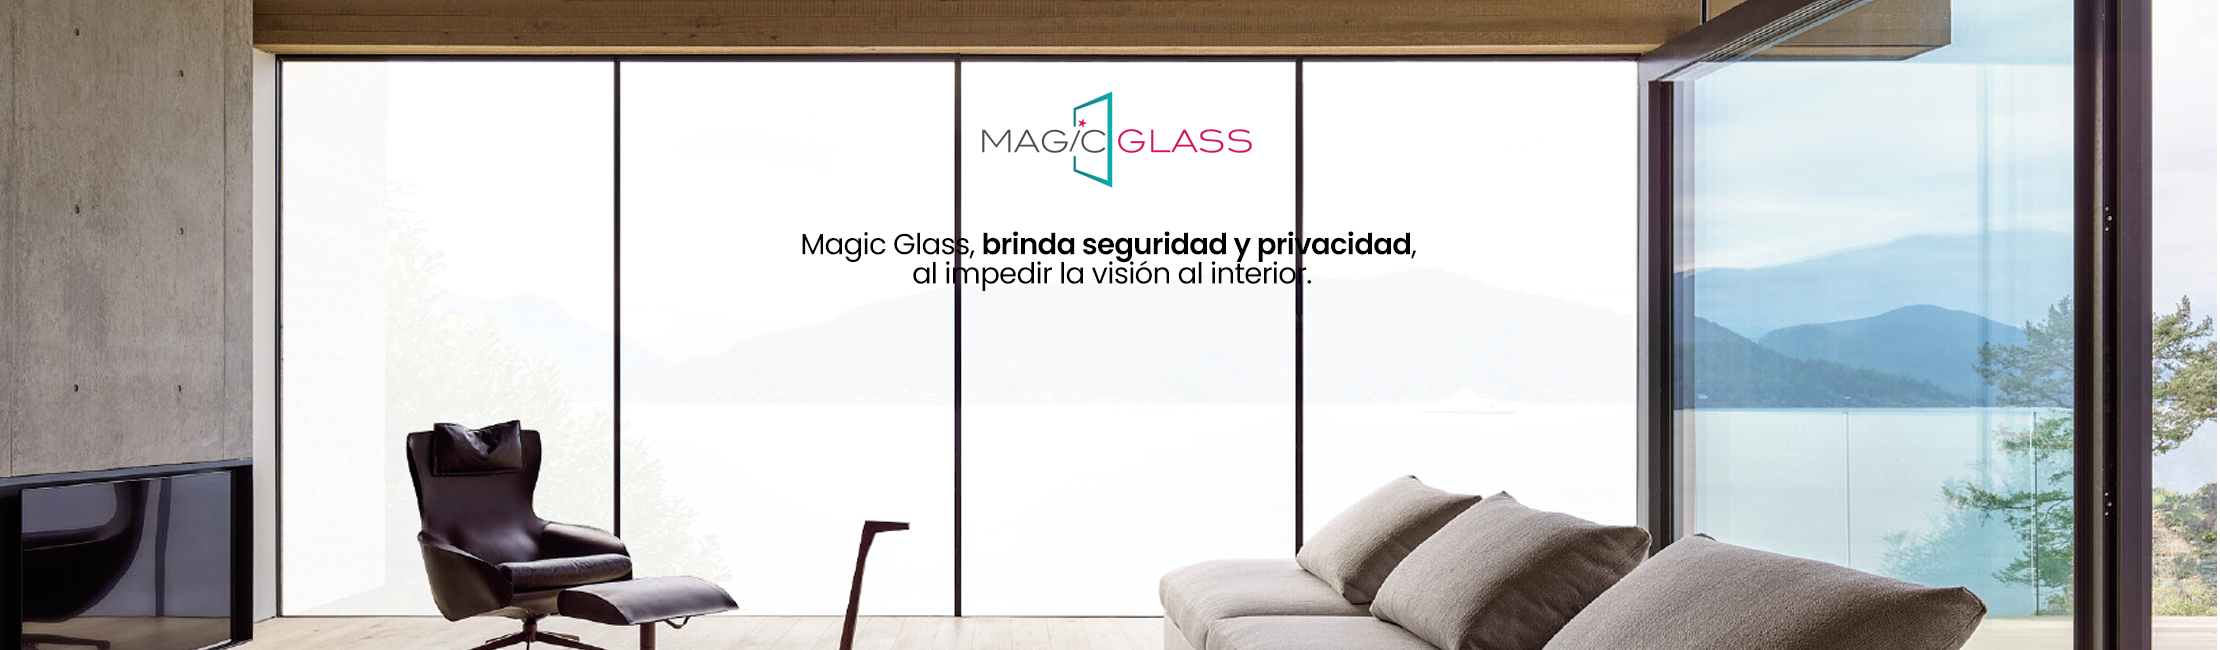 Magic glass 5a84f12a 5b50 420e b3c6 e6f38a2f80e7